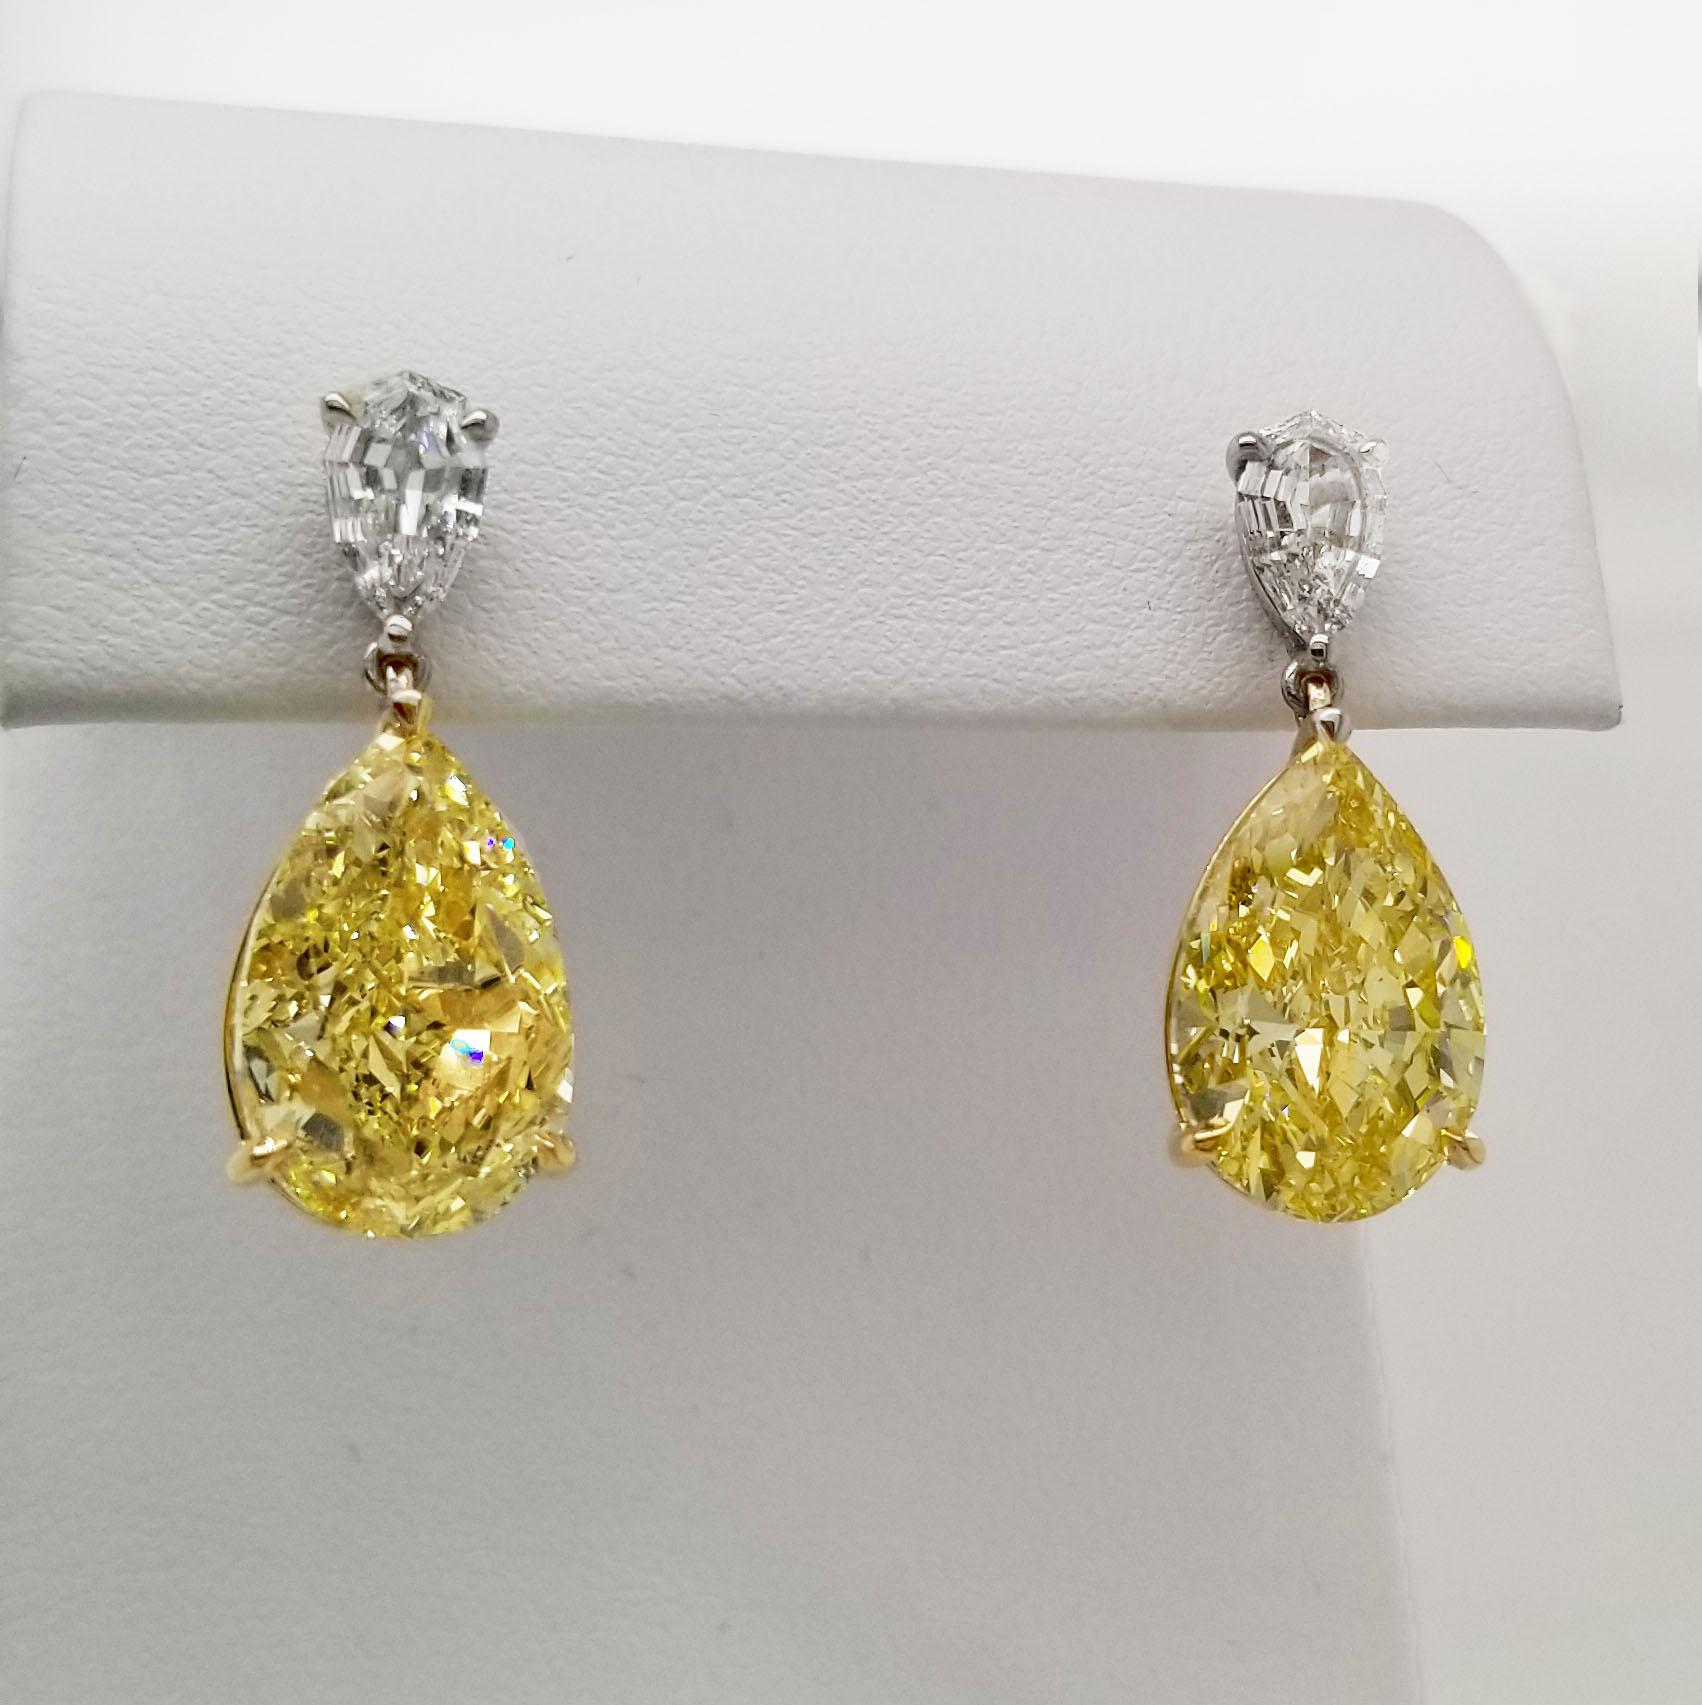 Provenant de la Collectional de SCARSELLI, cette paire de diamants en forme de poire de 7 carats chacun, de couleur jaune intense, pureté VS, est certifiée par le GIA (voir les photos du certificat pour des informations détaillées sur les pierres).